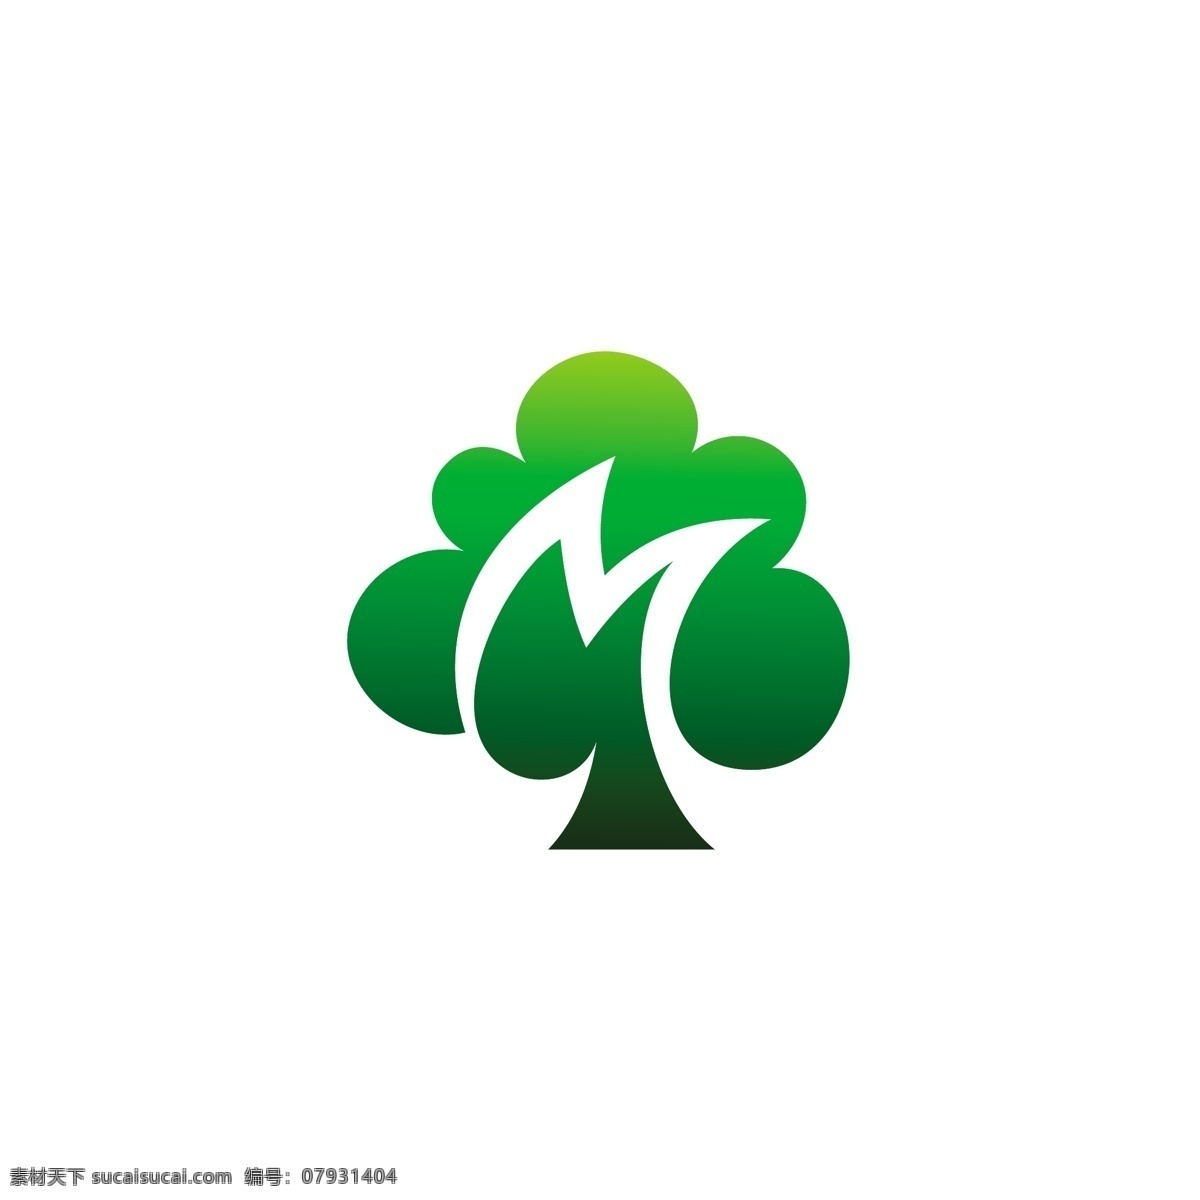 绿色 能源 农业 类 logo 科技 标志 创意 广告 化妆品 互联网 科技logo 领域 多用途 标识 公司 简约 企业标识 企业logo 珠宝 工业 服装